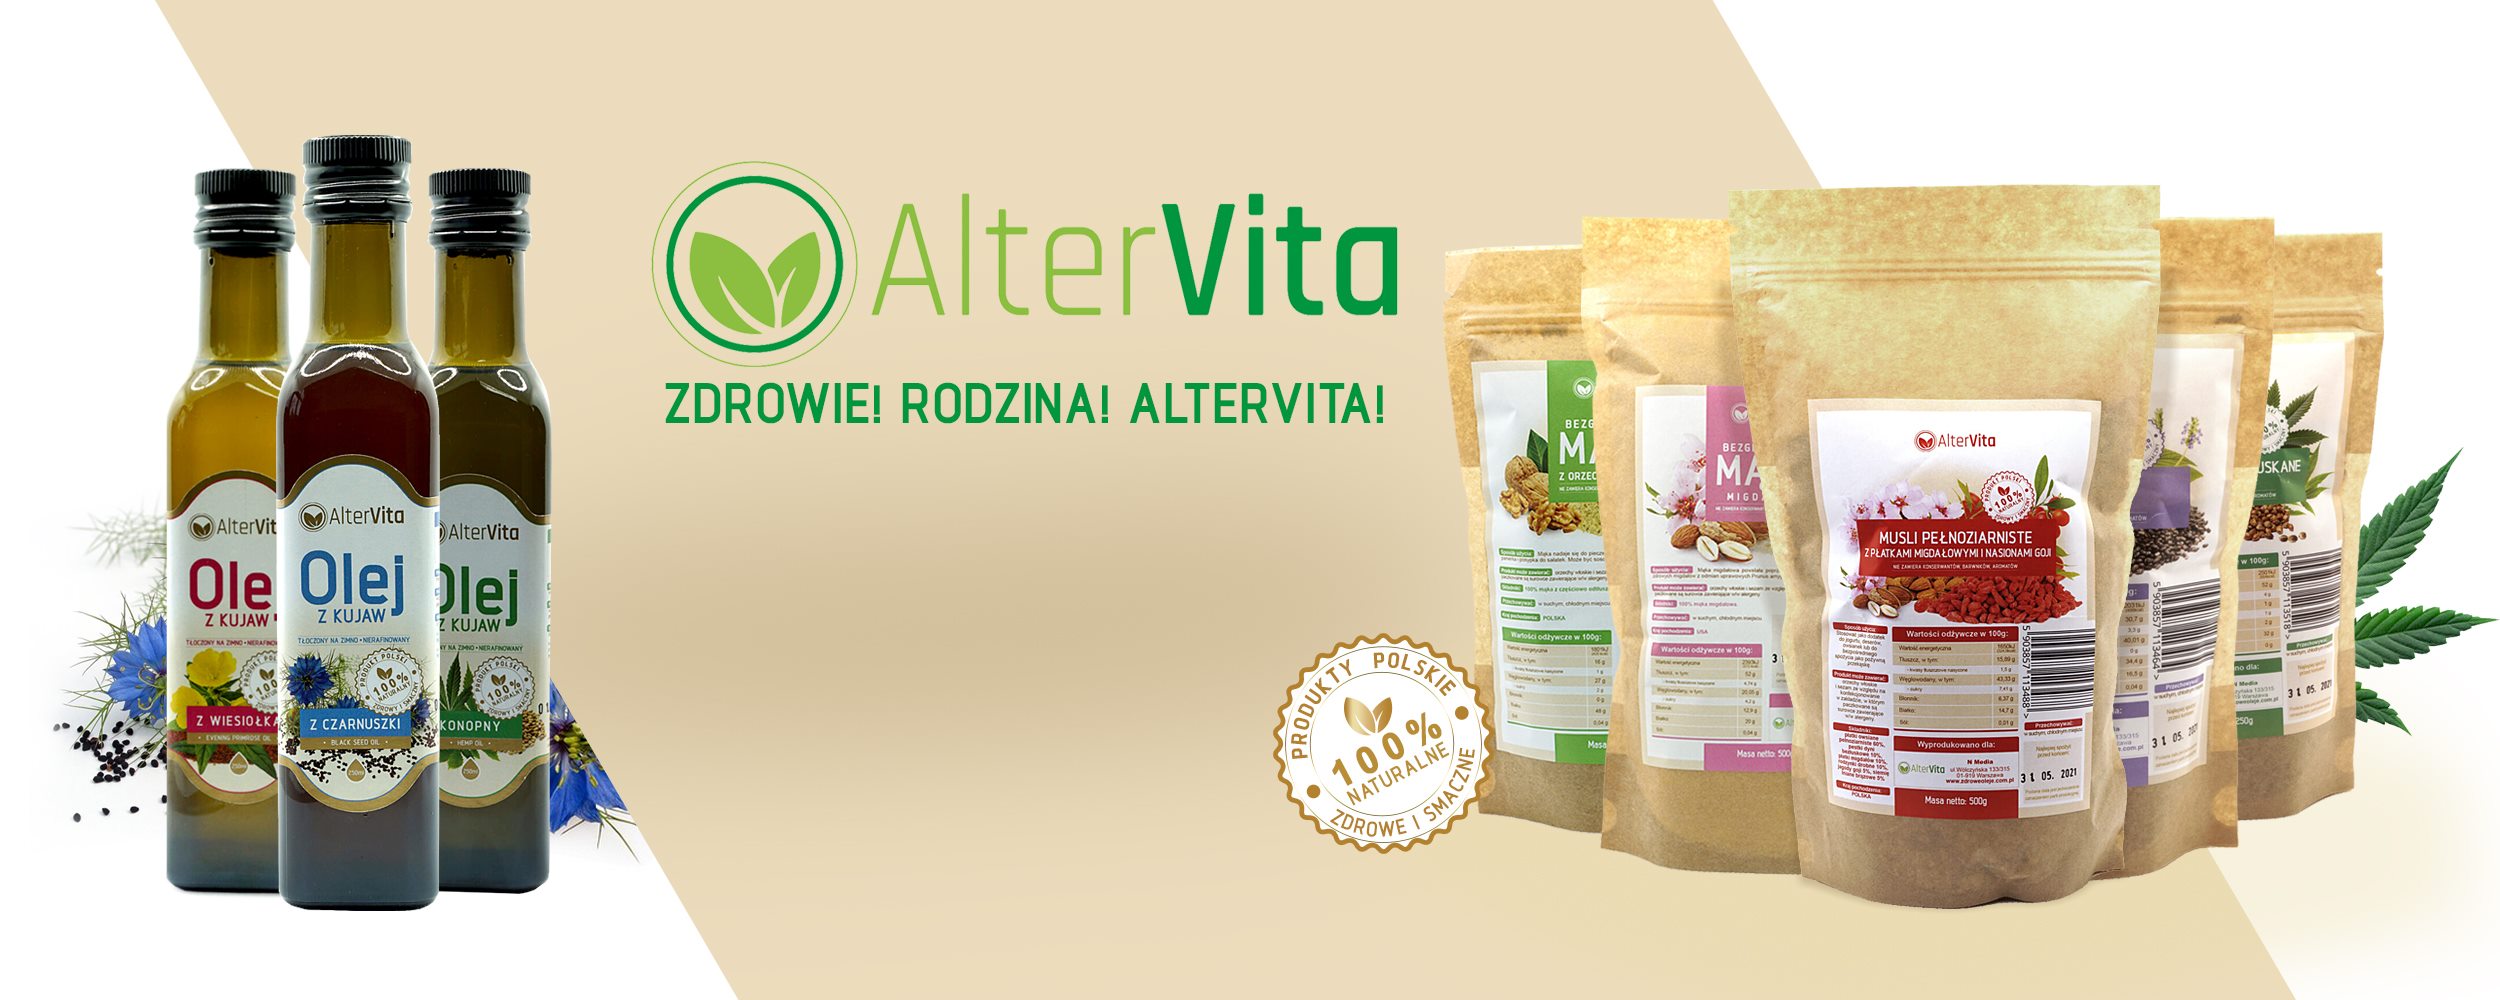 Informacje na temat marki AlterVita - Oleje Tłoczone na Zimno i Bezglutenowe Mąki